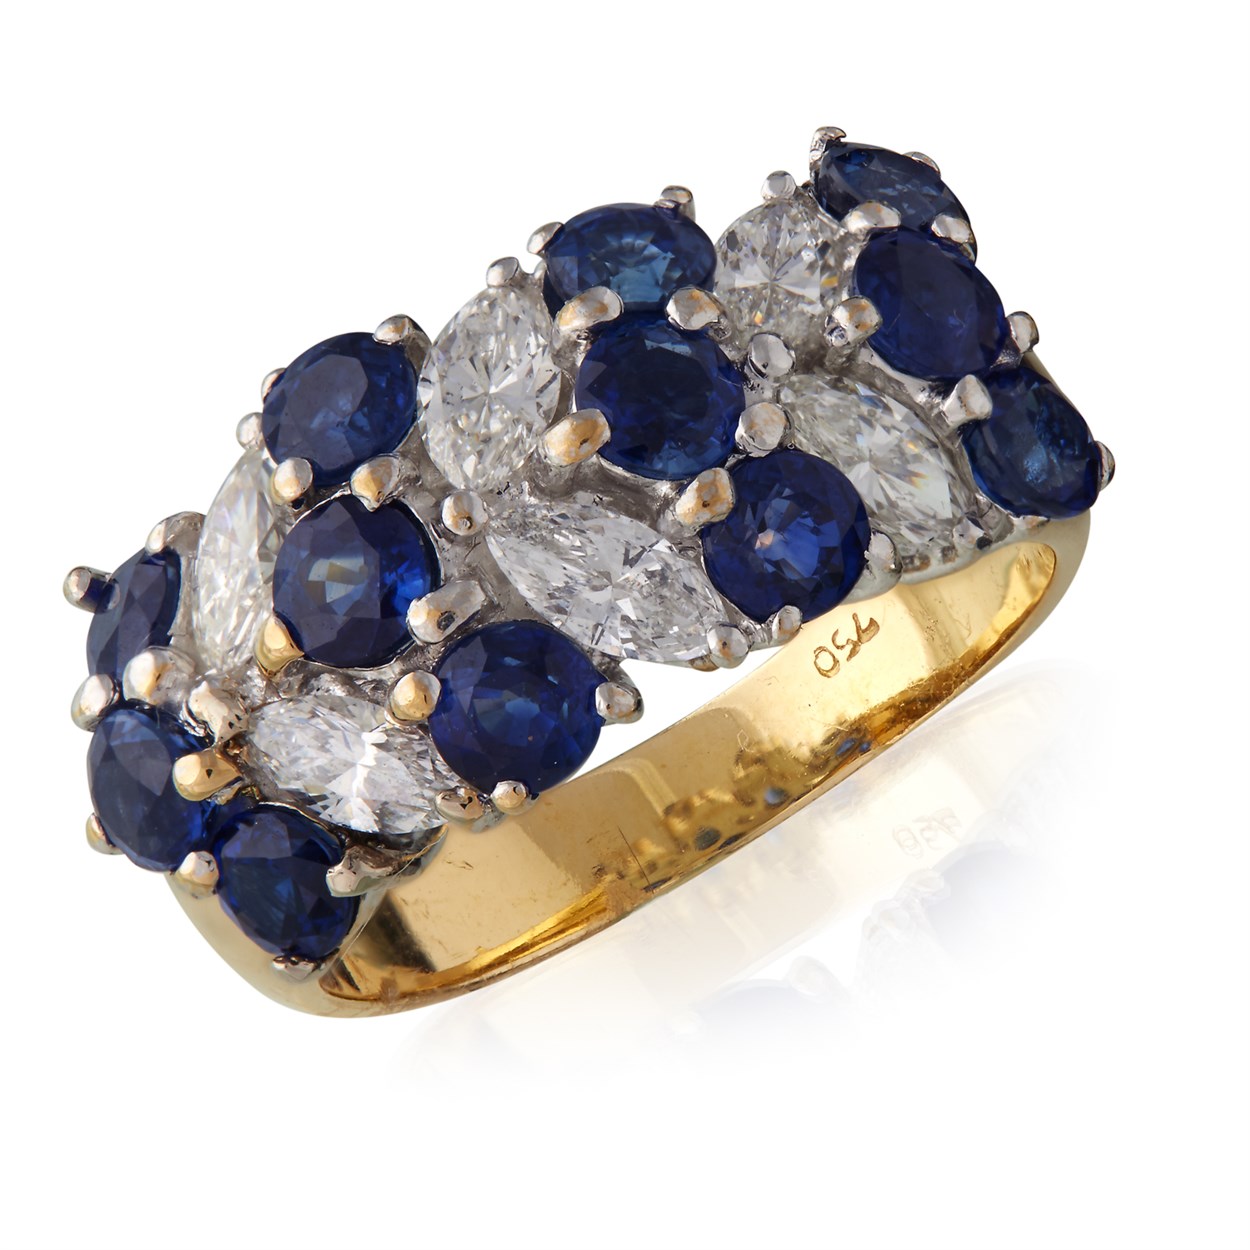 Lot 47 - An eighteen karat gold, sapphire, and diamond ring